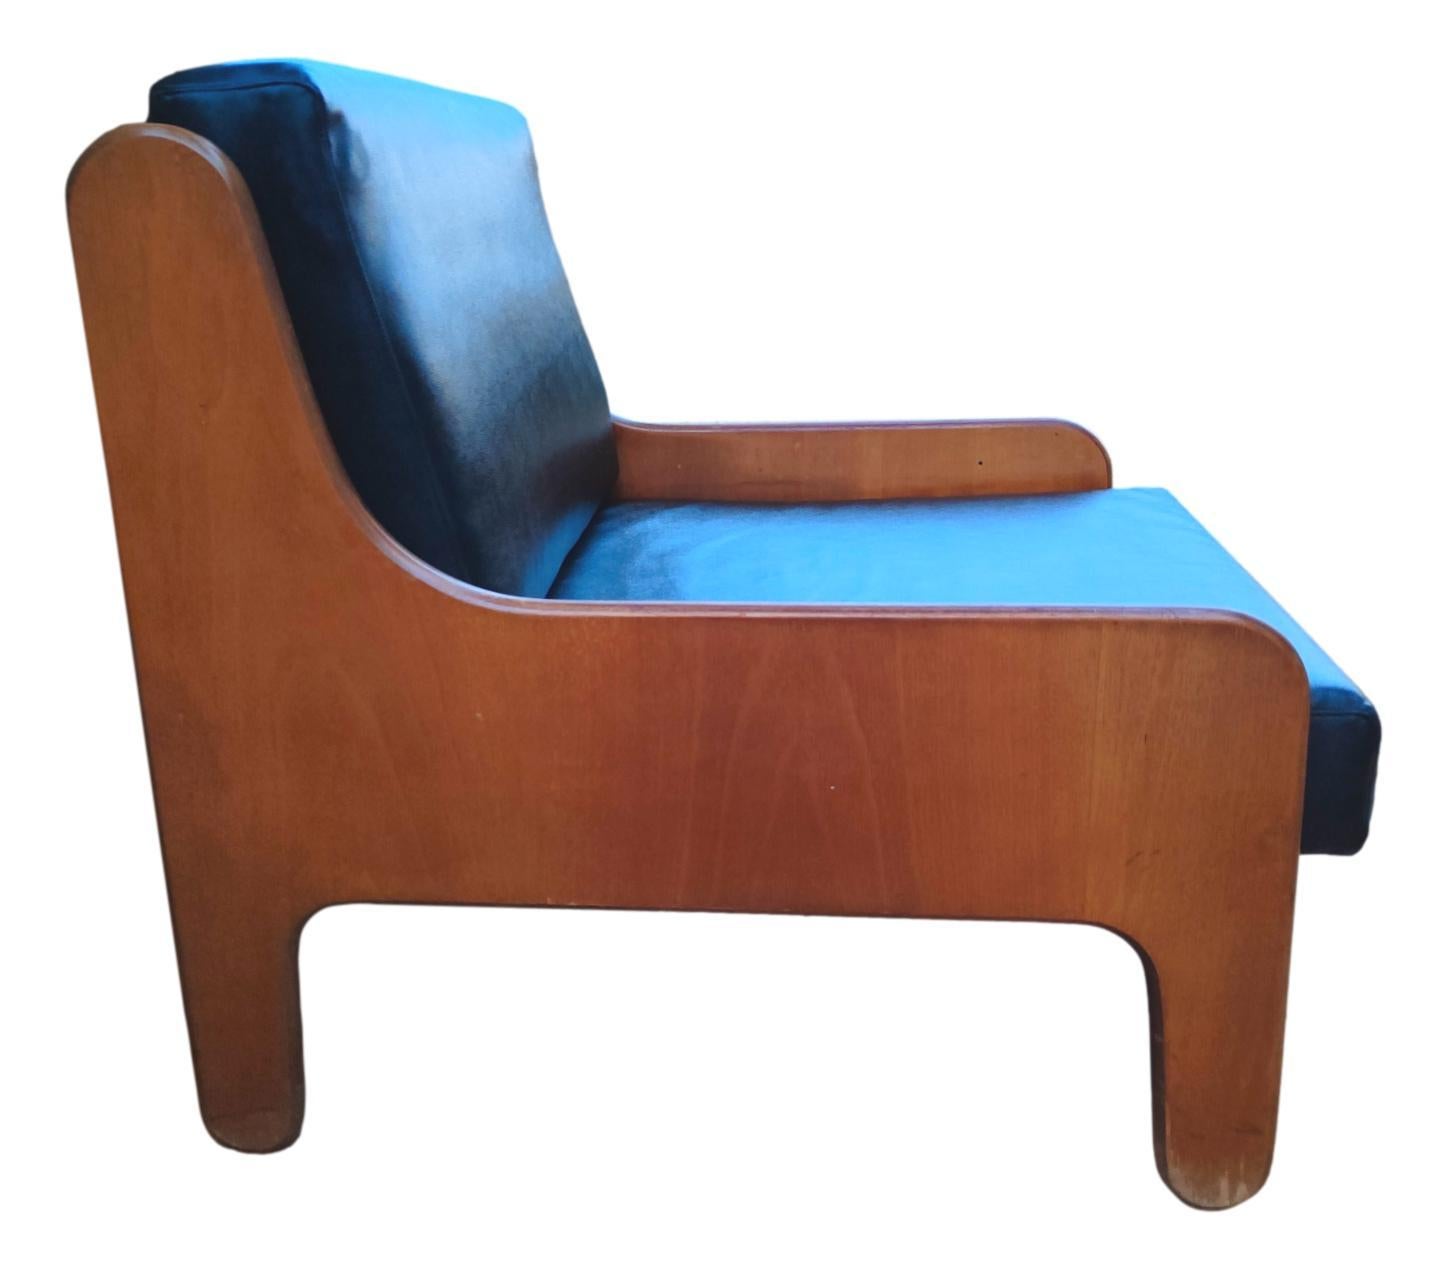 arflex armchair baronet model design marco zanuso 1964 In Good Condition For Sale In taranto, IT